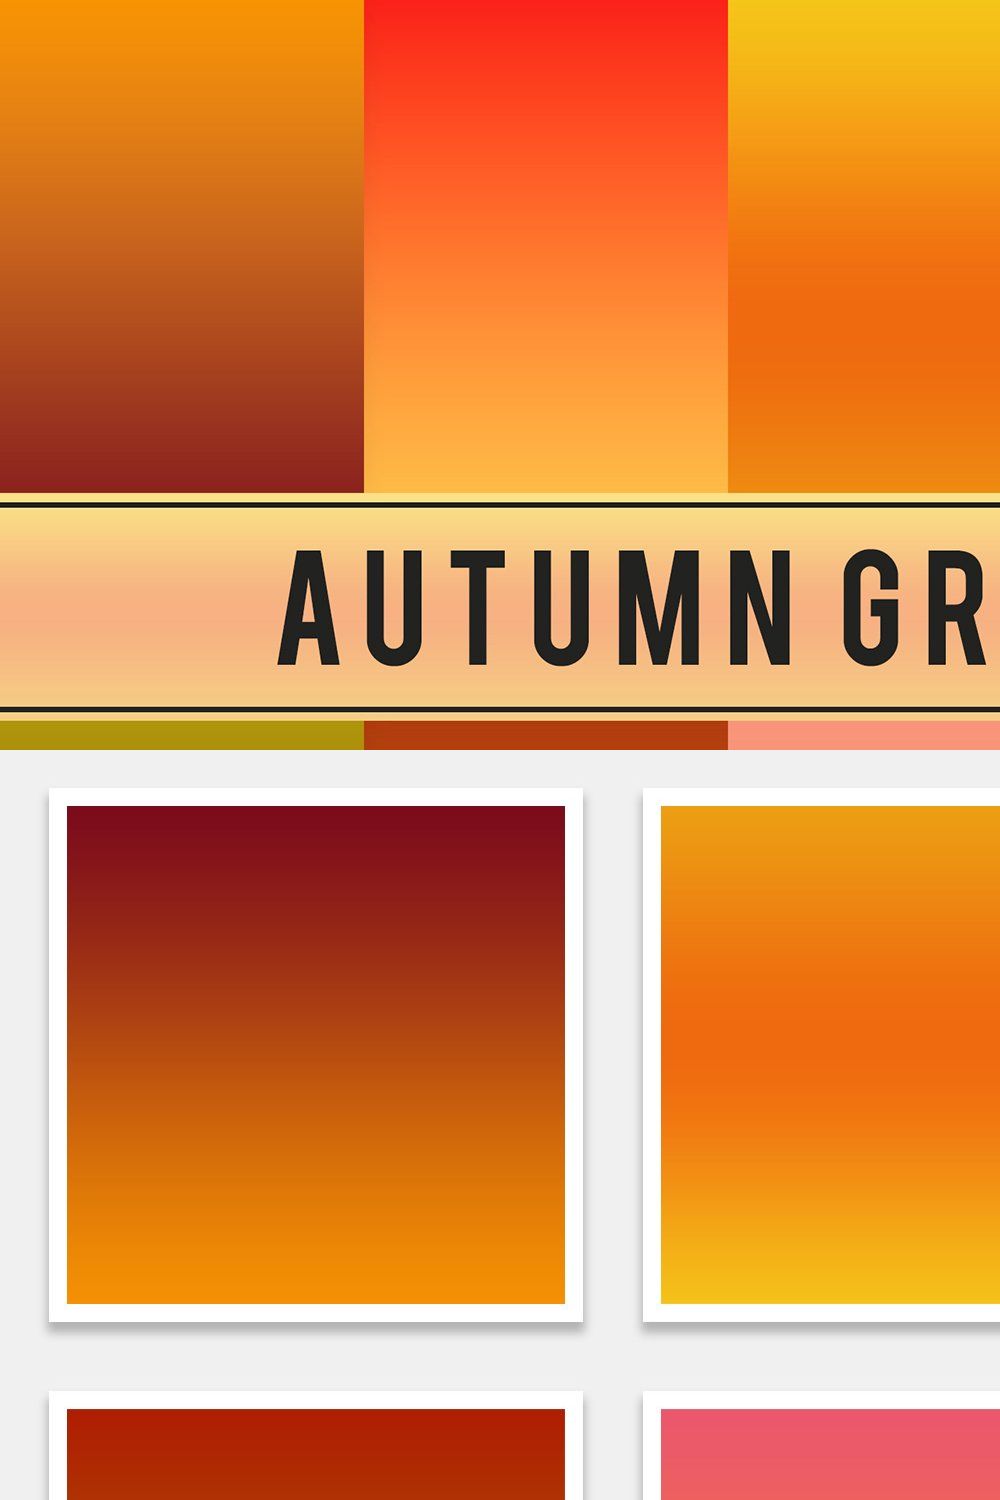 Autumn Gradients pinterest preview image.